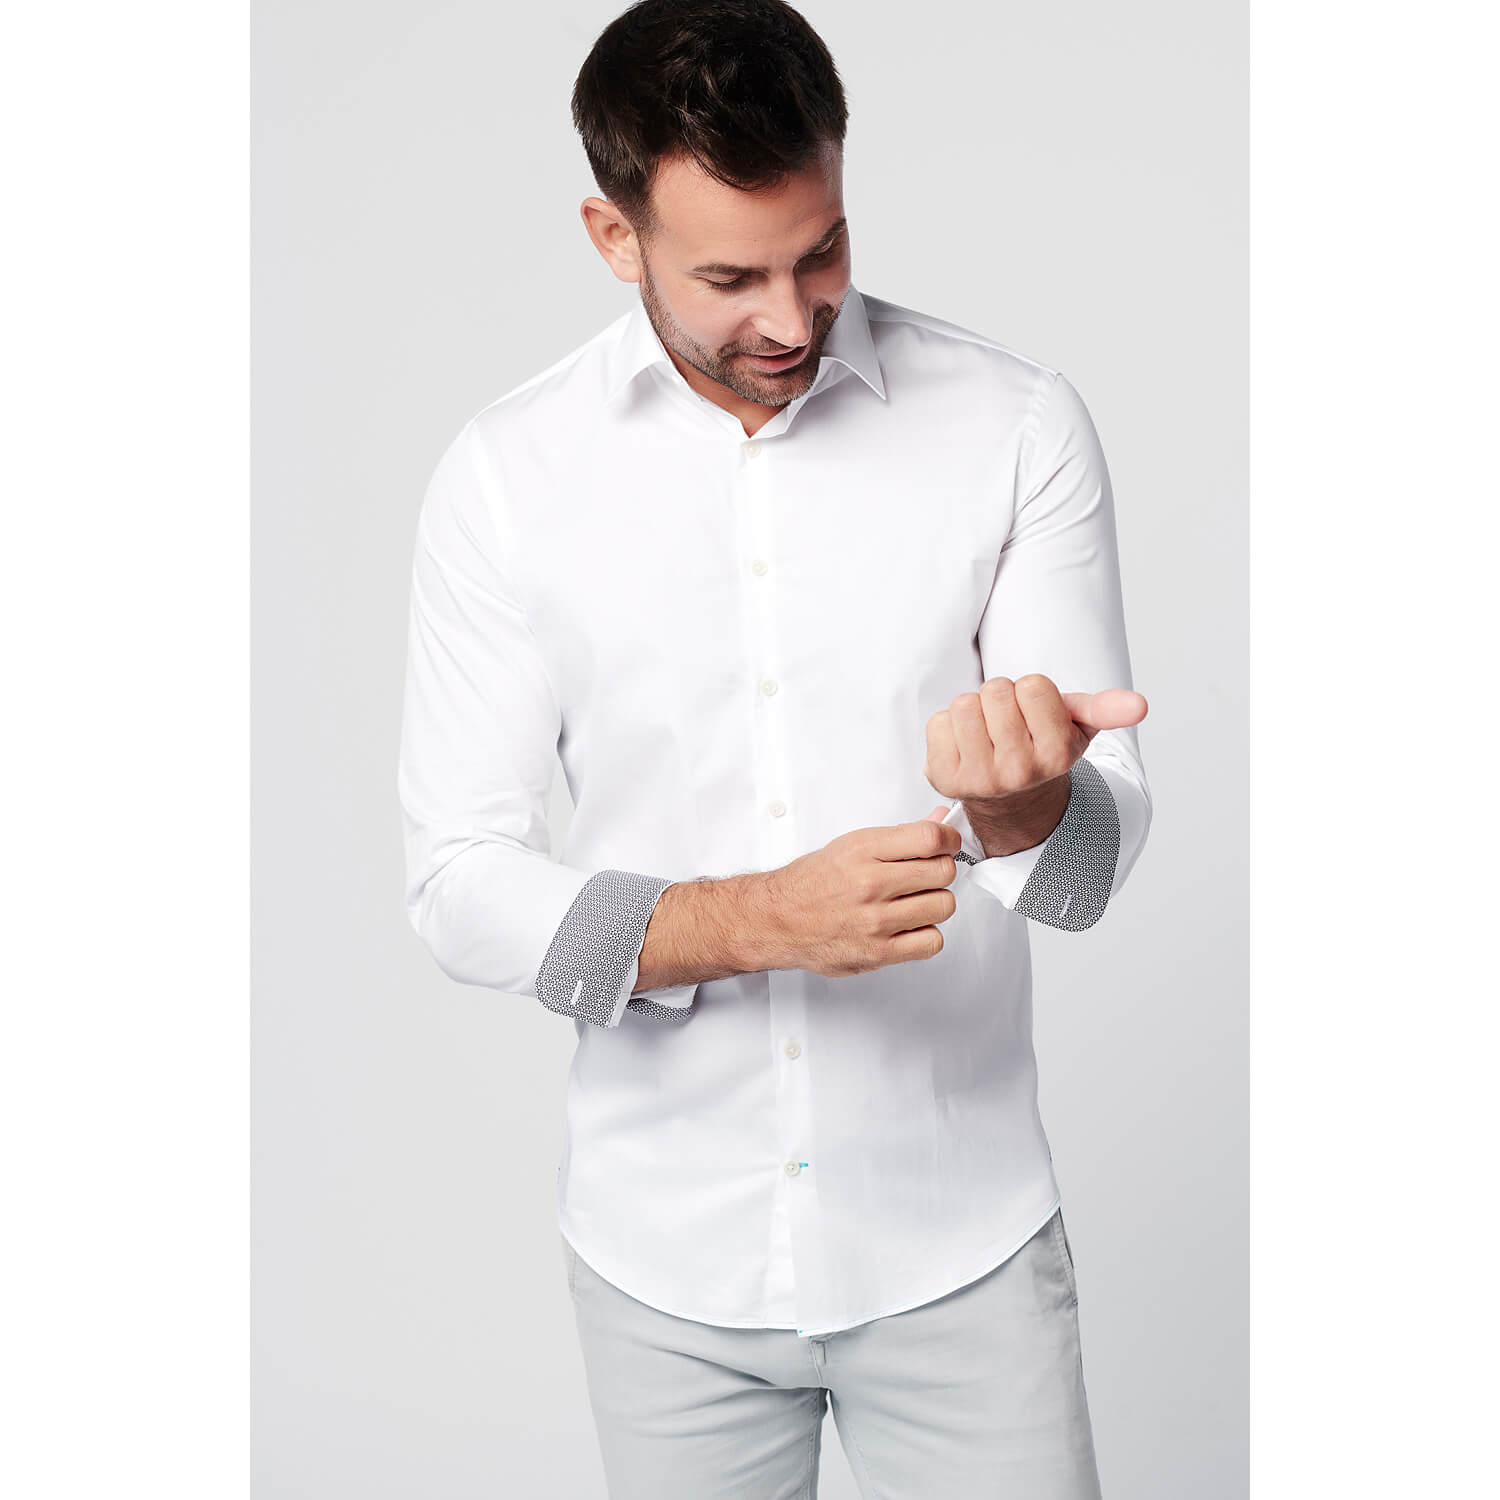 SKOT Fashion Shirt - Slim Fit - Shadow White -